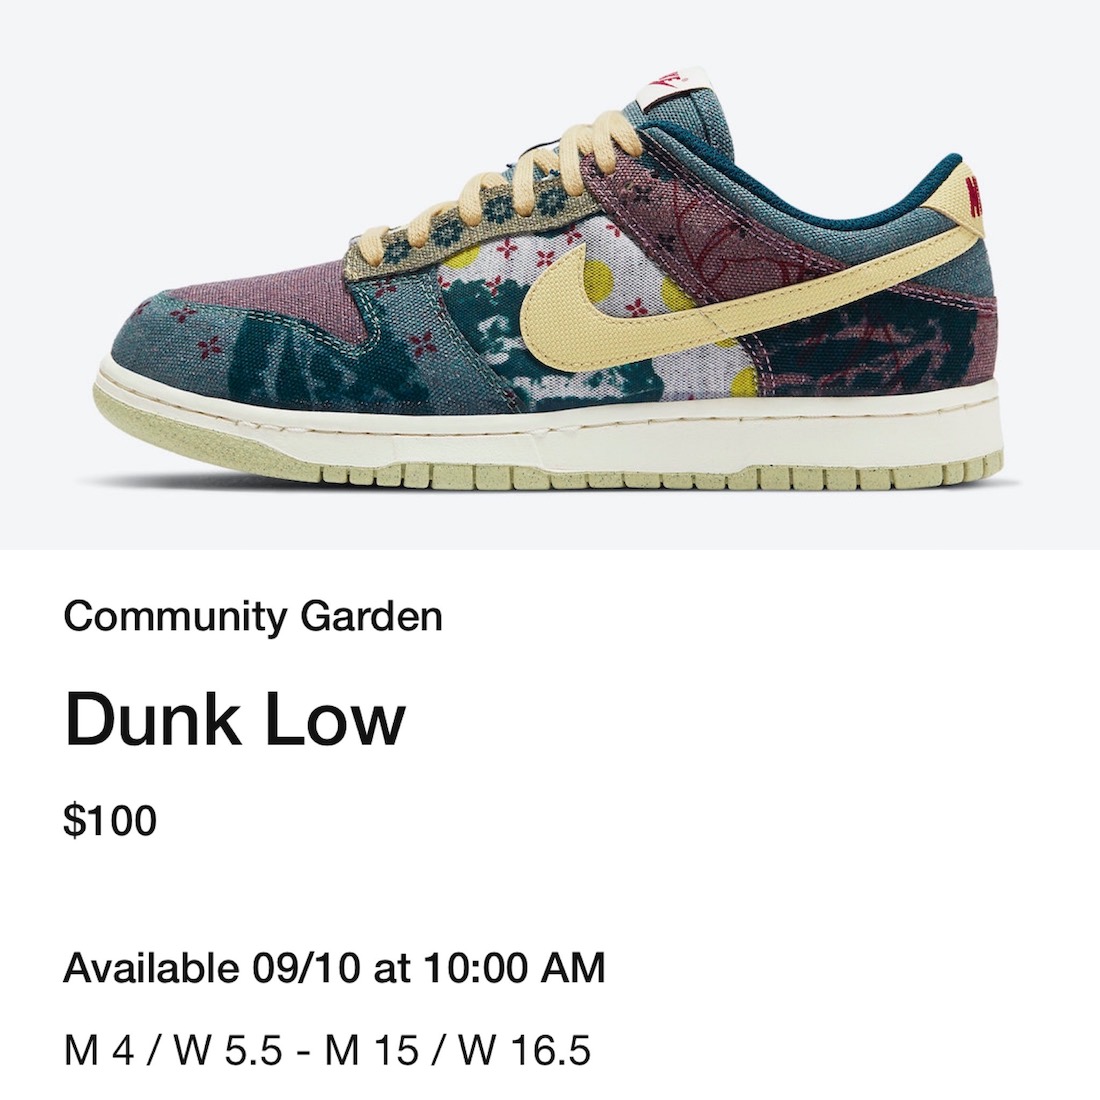 Nike Dunk Low Community Garden CZ9747-900 Release Date - SBD